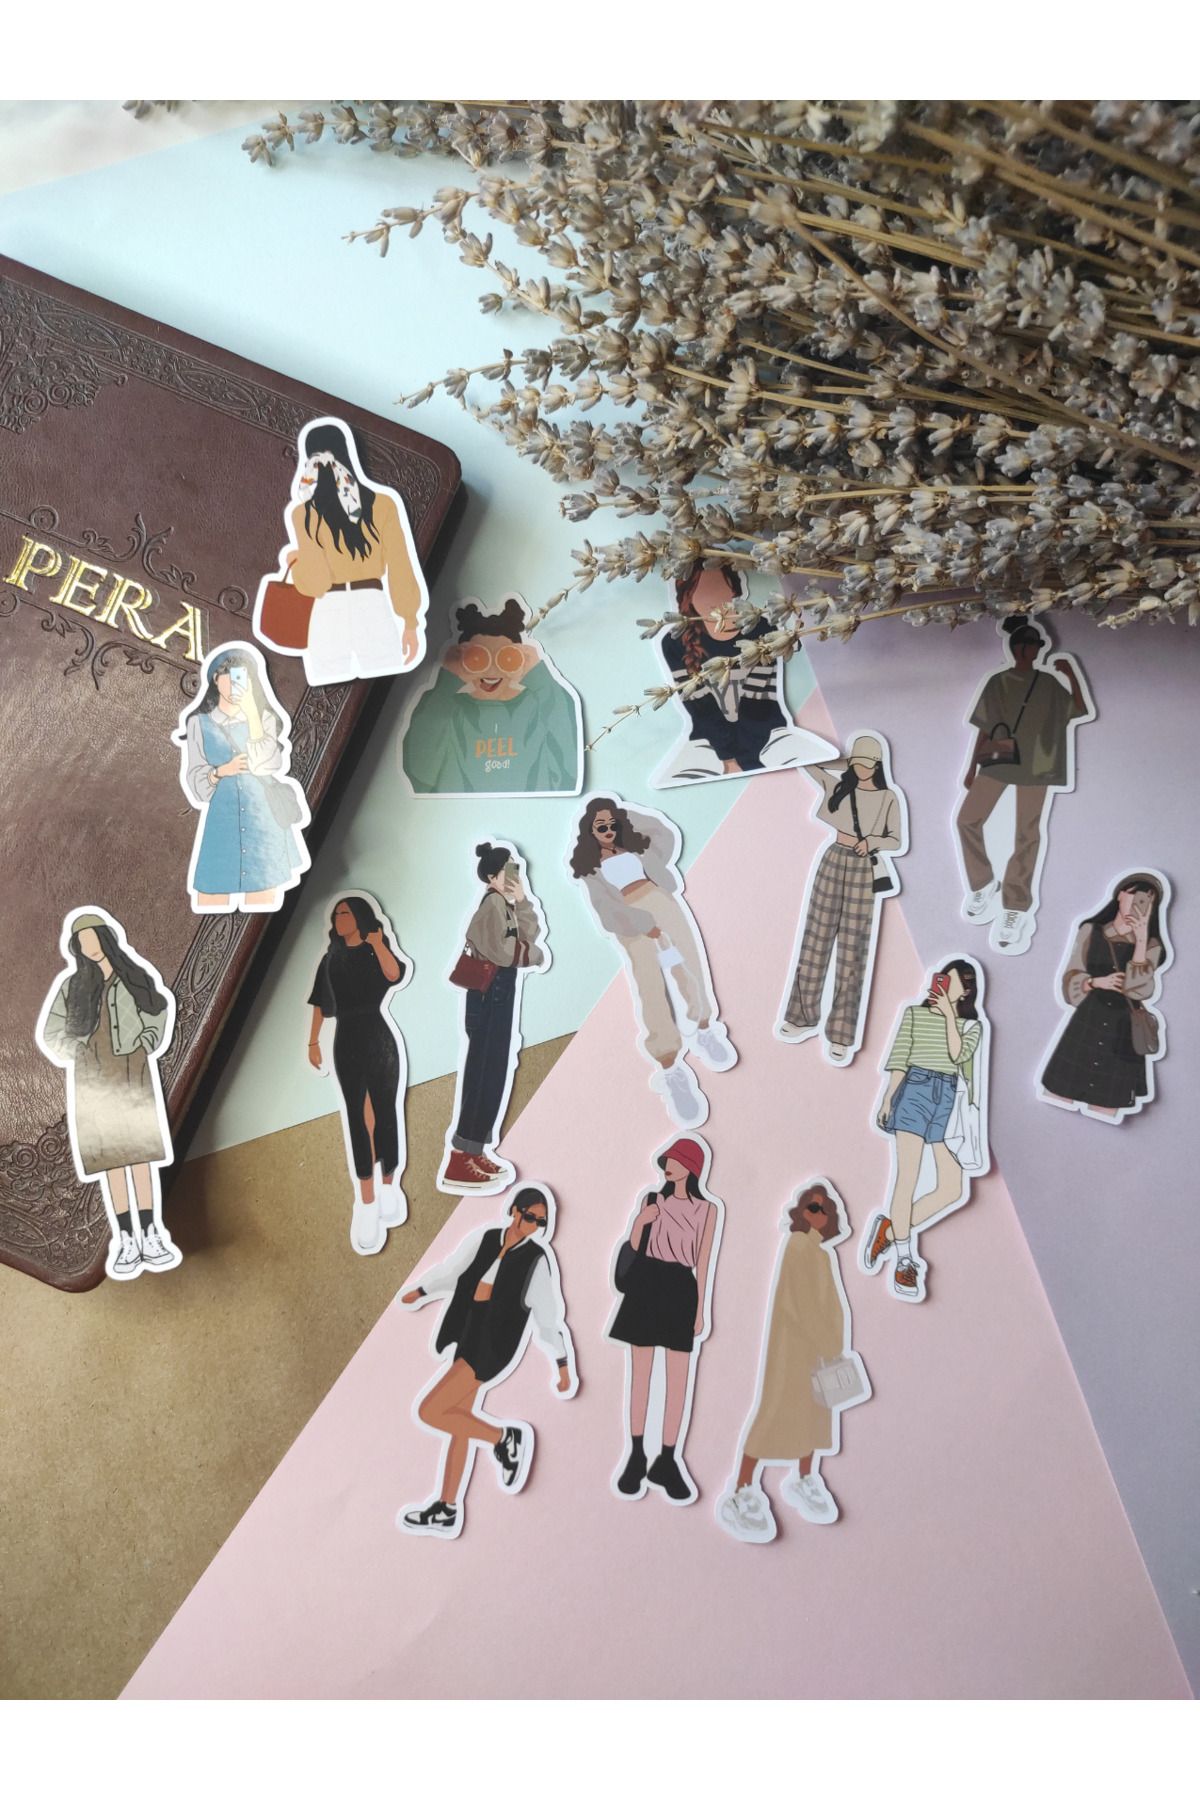 Flowery Paper Kadın Fashion Tekli Sticker Set - Defter ,Ajanda , Journal,Scrapbook için uygundur